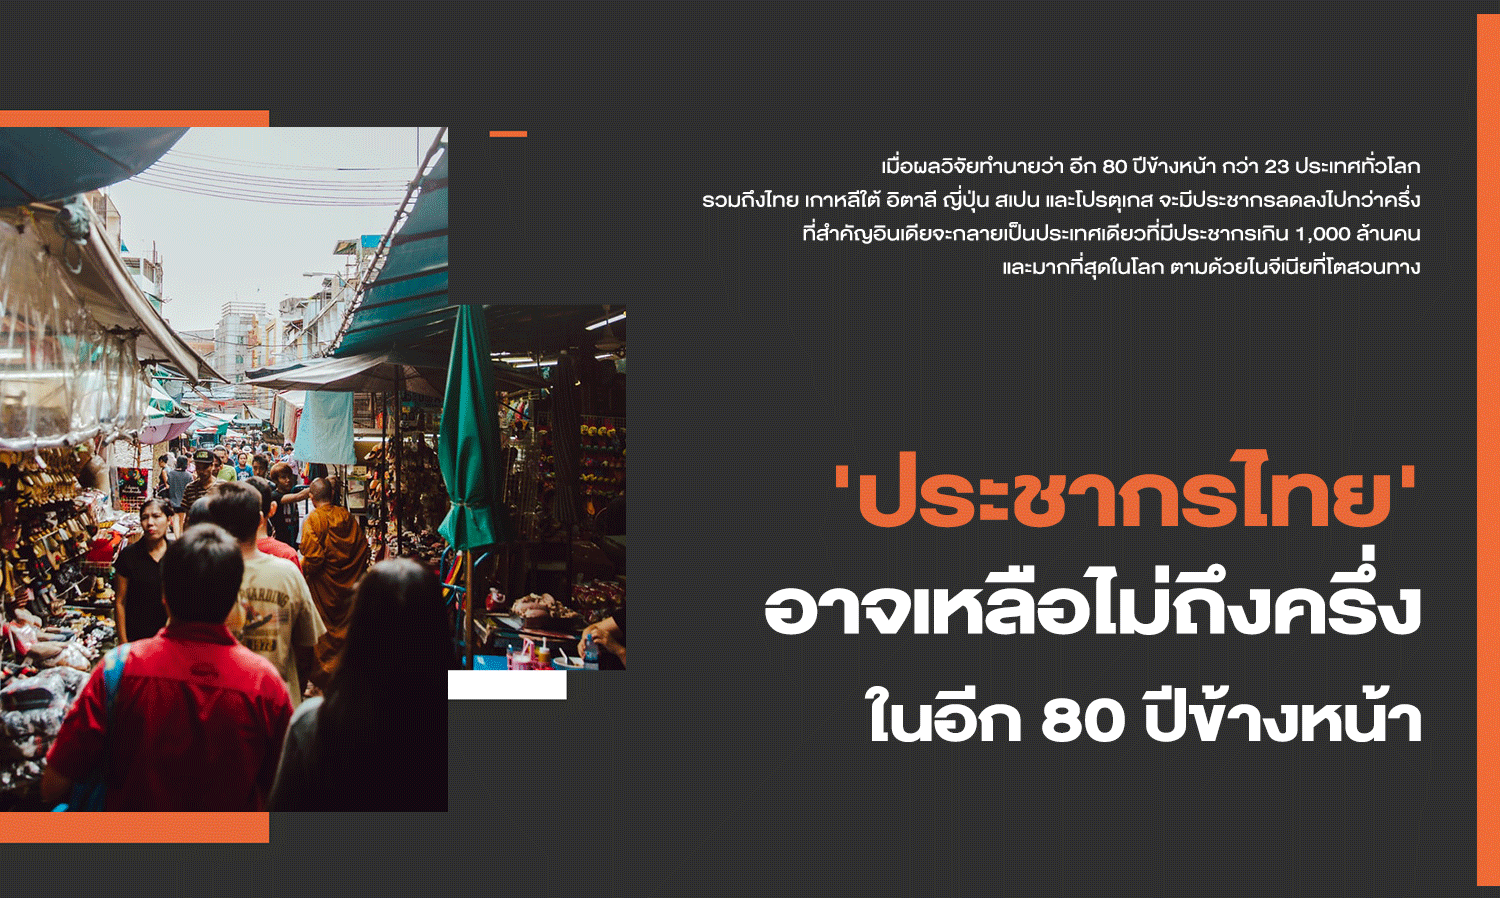 'ประชากรไทย' อาจเหลือไม่ถึงครึ่ง ในอีก 80 ปีข้างหน้า